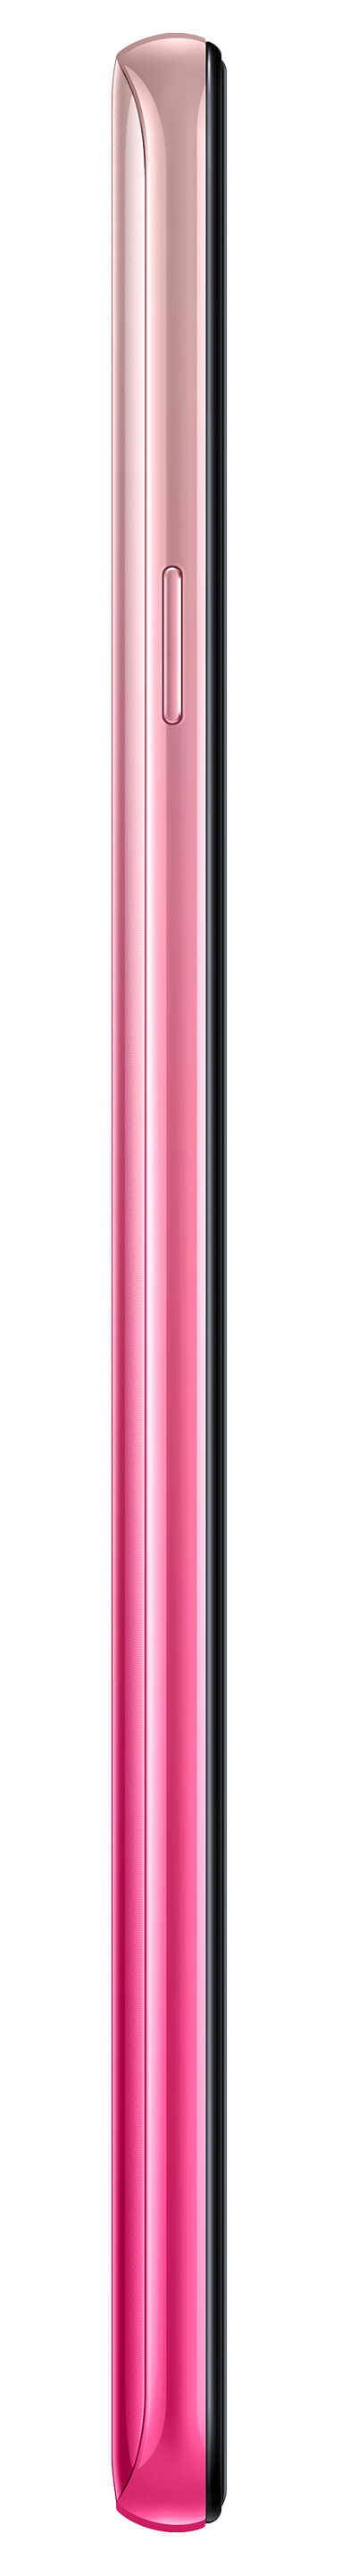 Samsung Galaxy A9 Smartphone 128GB Dual SIM Pink